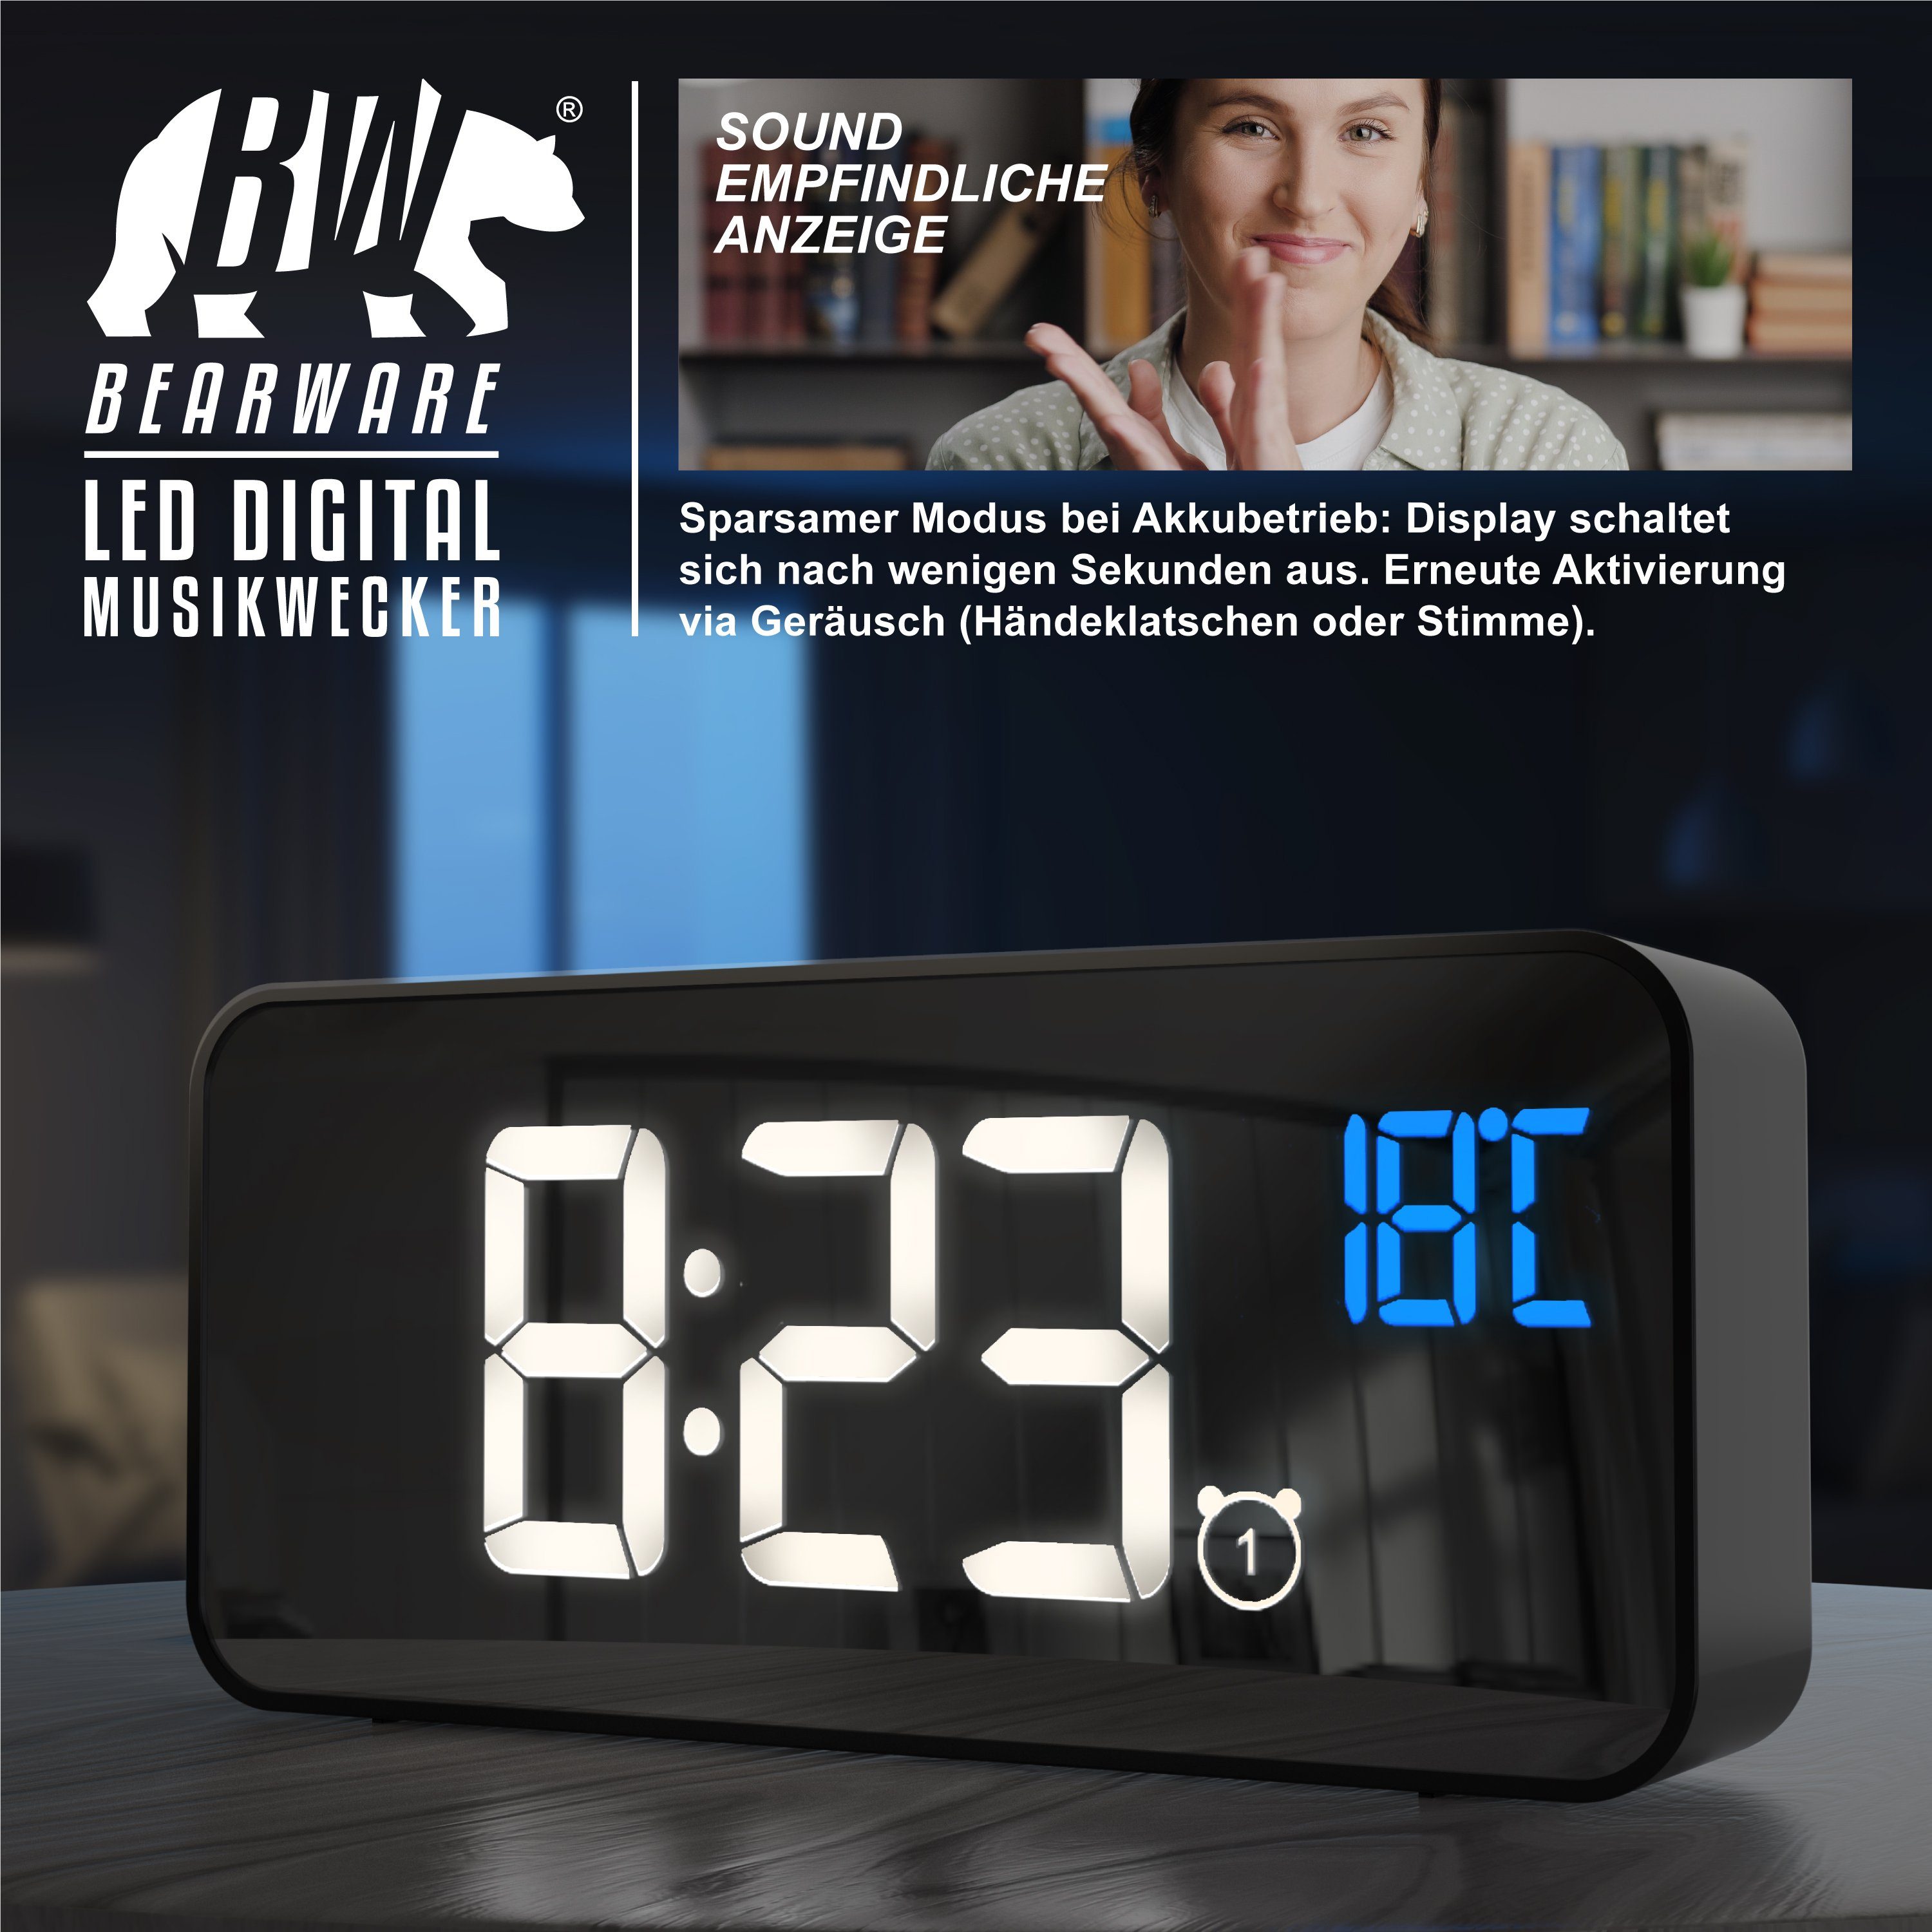 schwarz digital Reisewecker Akku Musikwecker mit BEARWARE Temperaturanzeige, Netzteil & Wecker